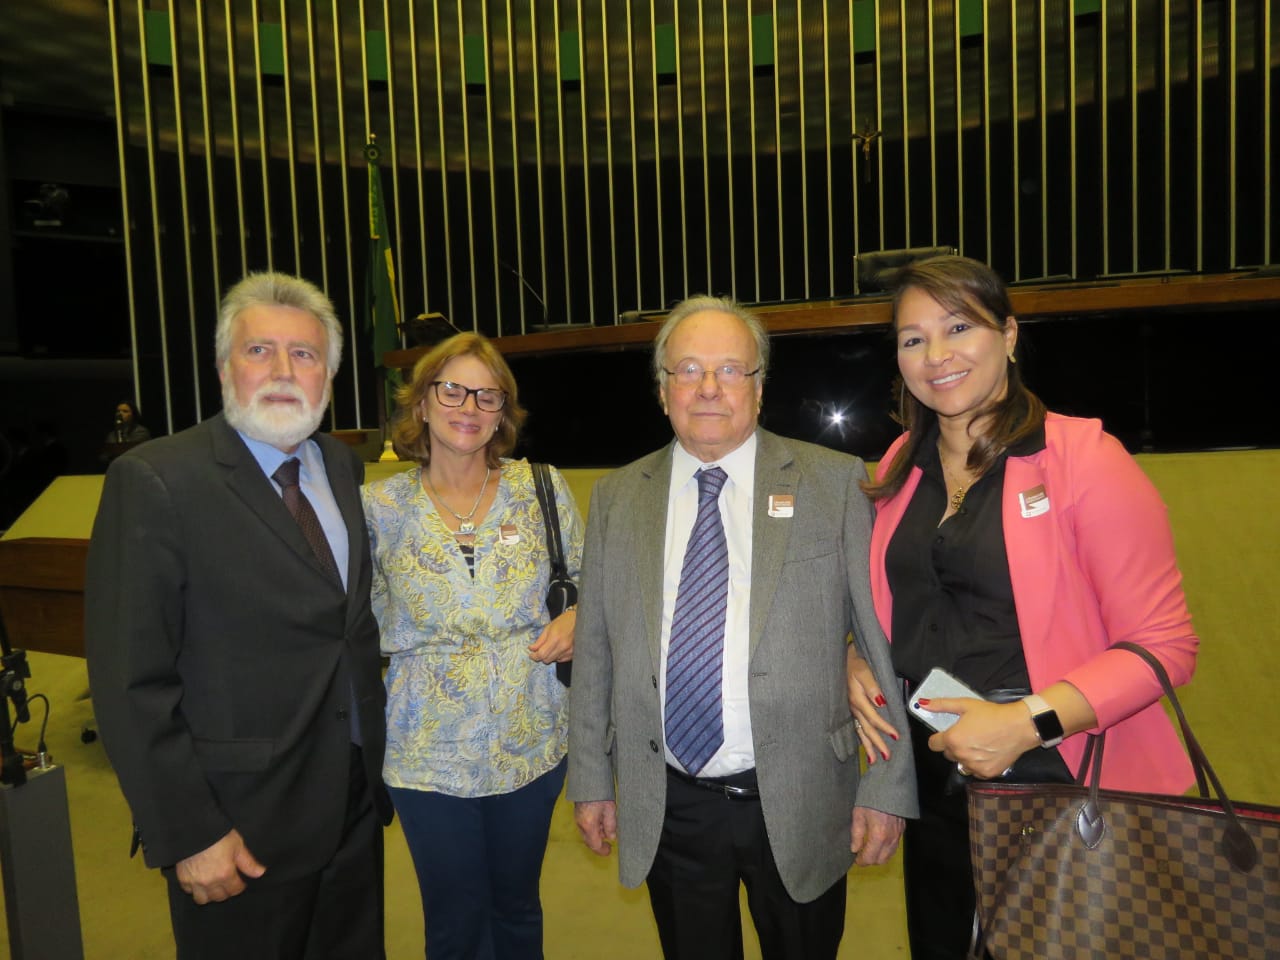 Sid Riedel e Rita Vivas participam de homenagem aos advogados Sigmaringa e Grossi na Câmara dos Deputados